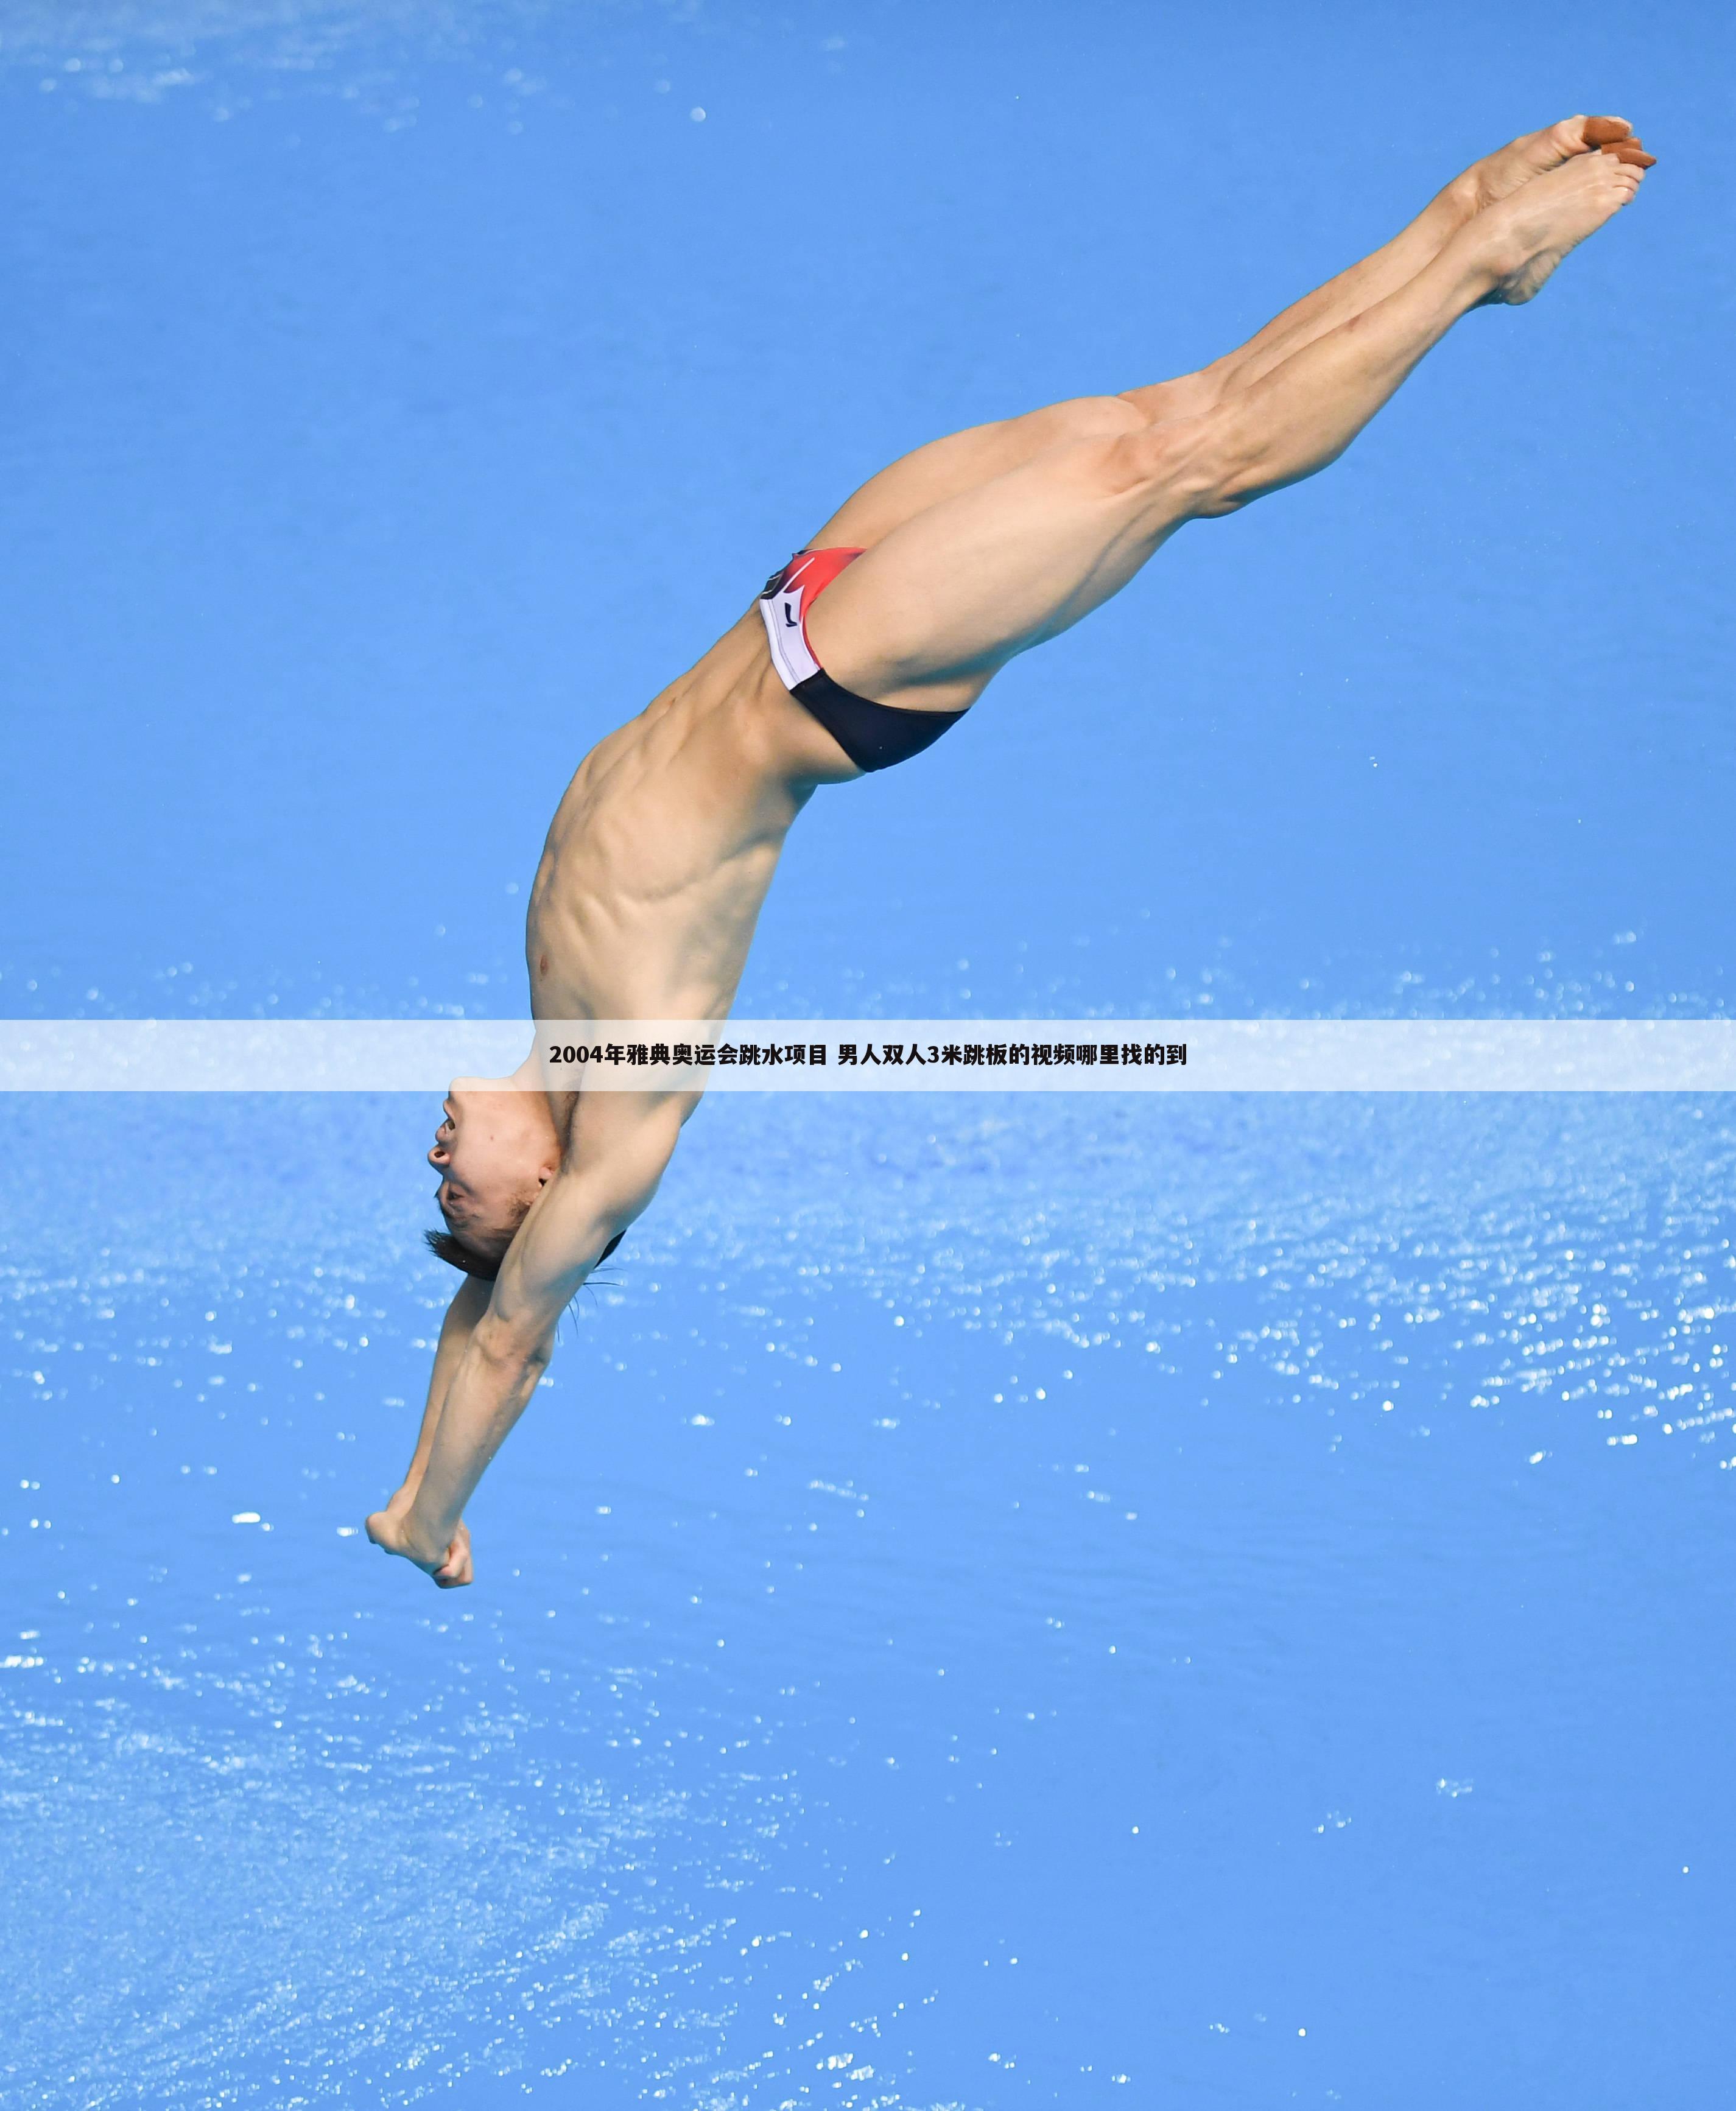 2004年雅典奥运会跳水项目 男人双人3米跳板的视频哪里找的到